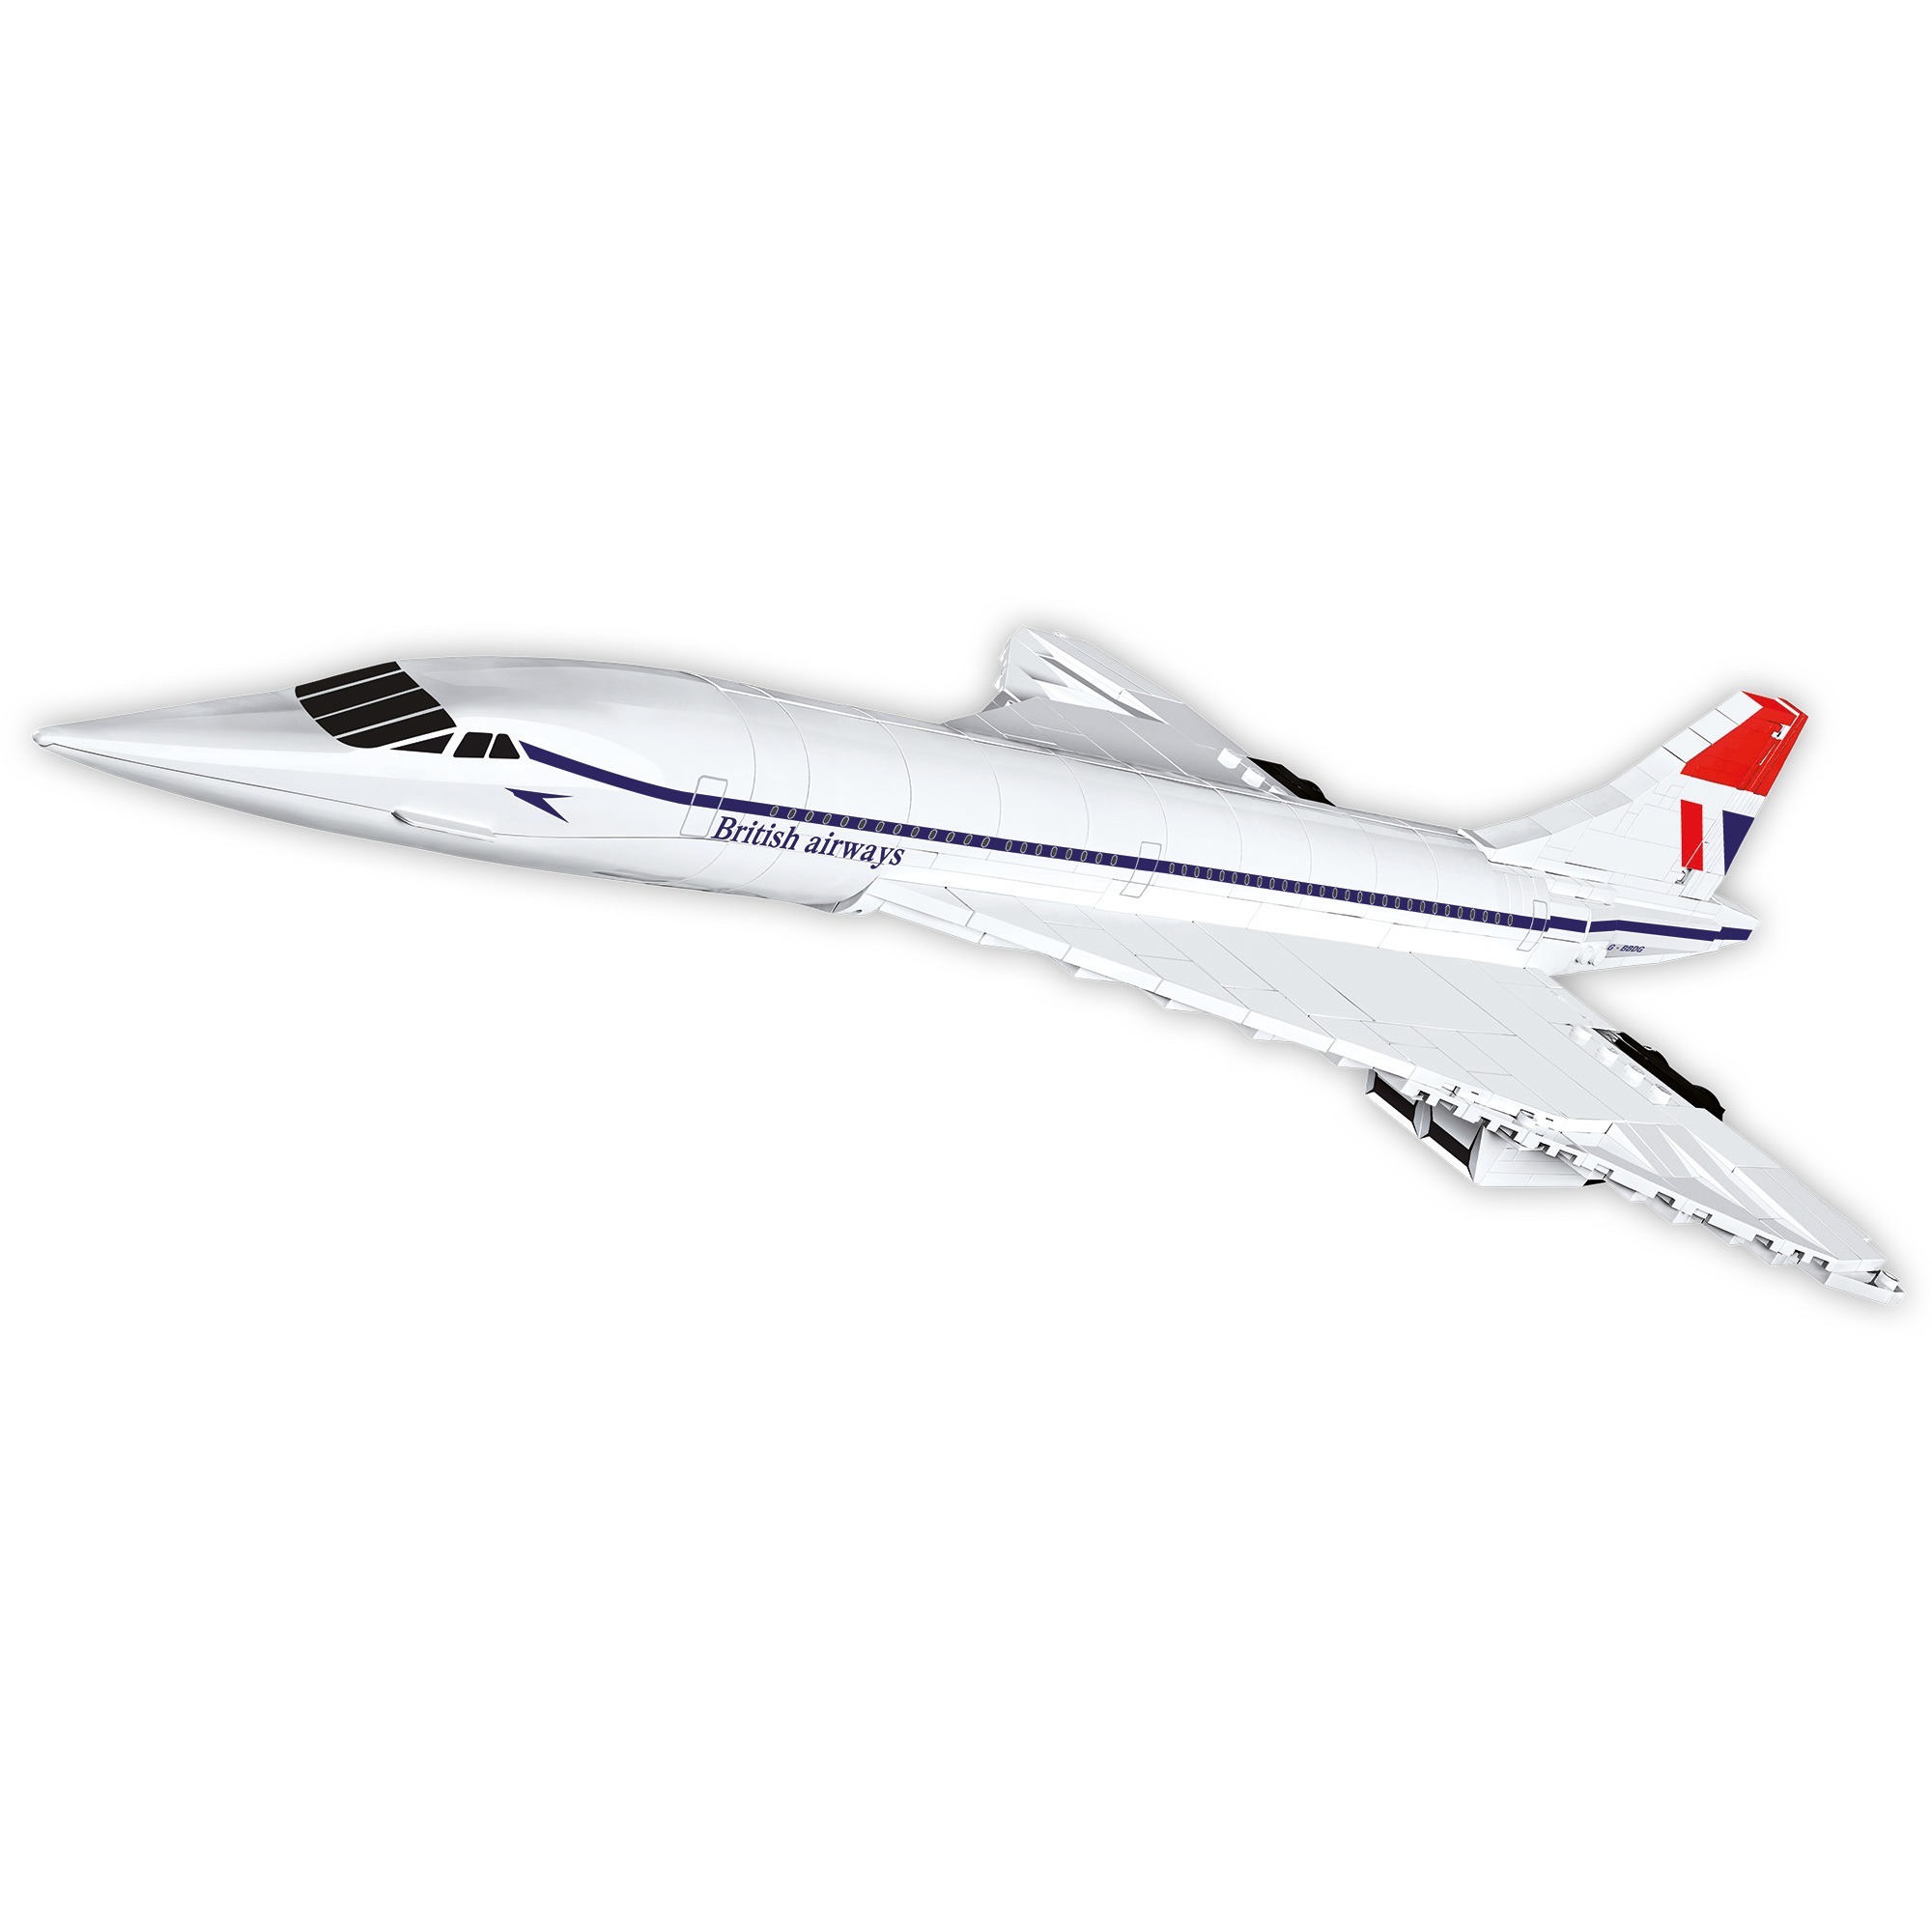 Image of Alternate - Concorde G-BBDG, Konstruktionsspielzeug online einkaufen bei Alternate